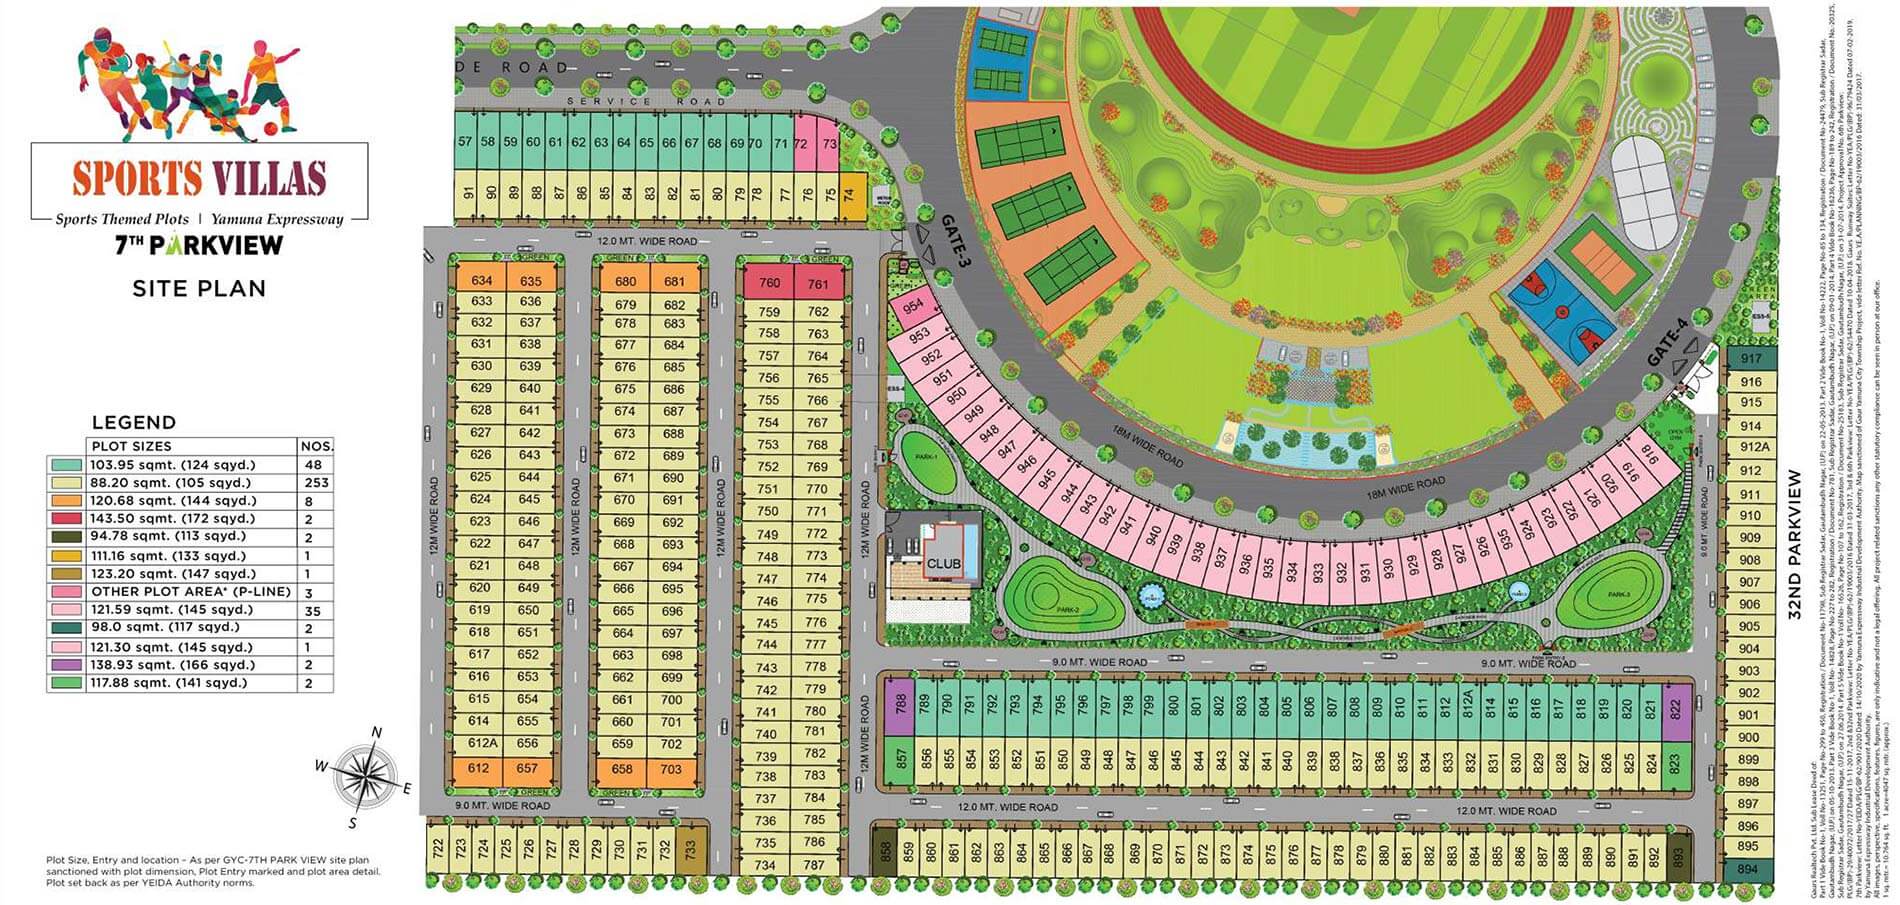 Gaur Sports Villas Site Plan